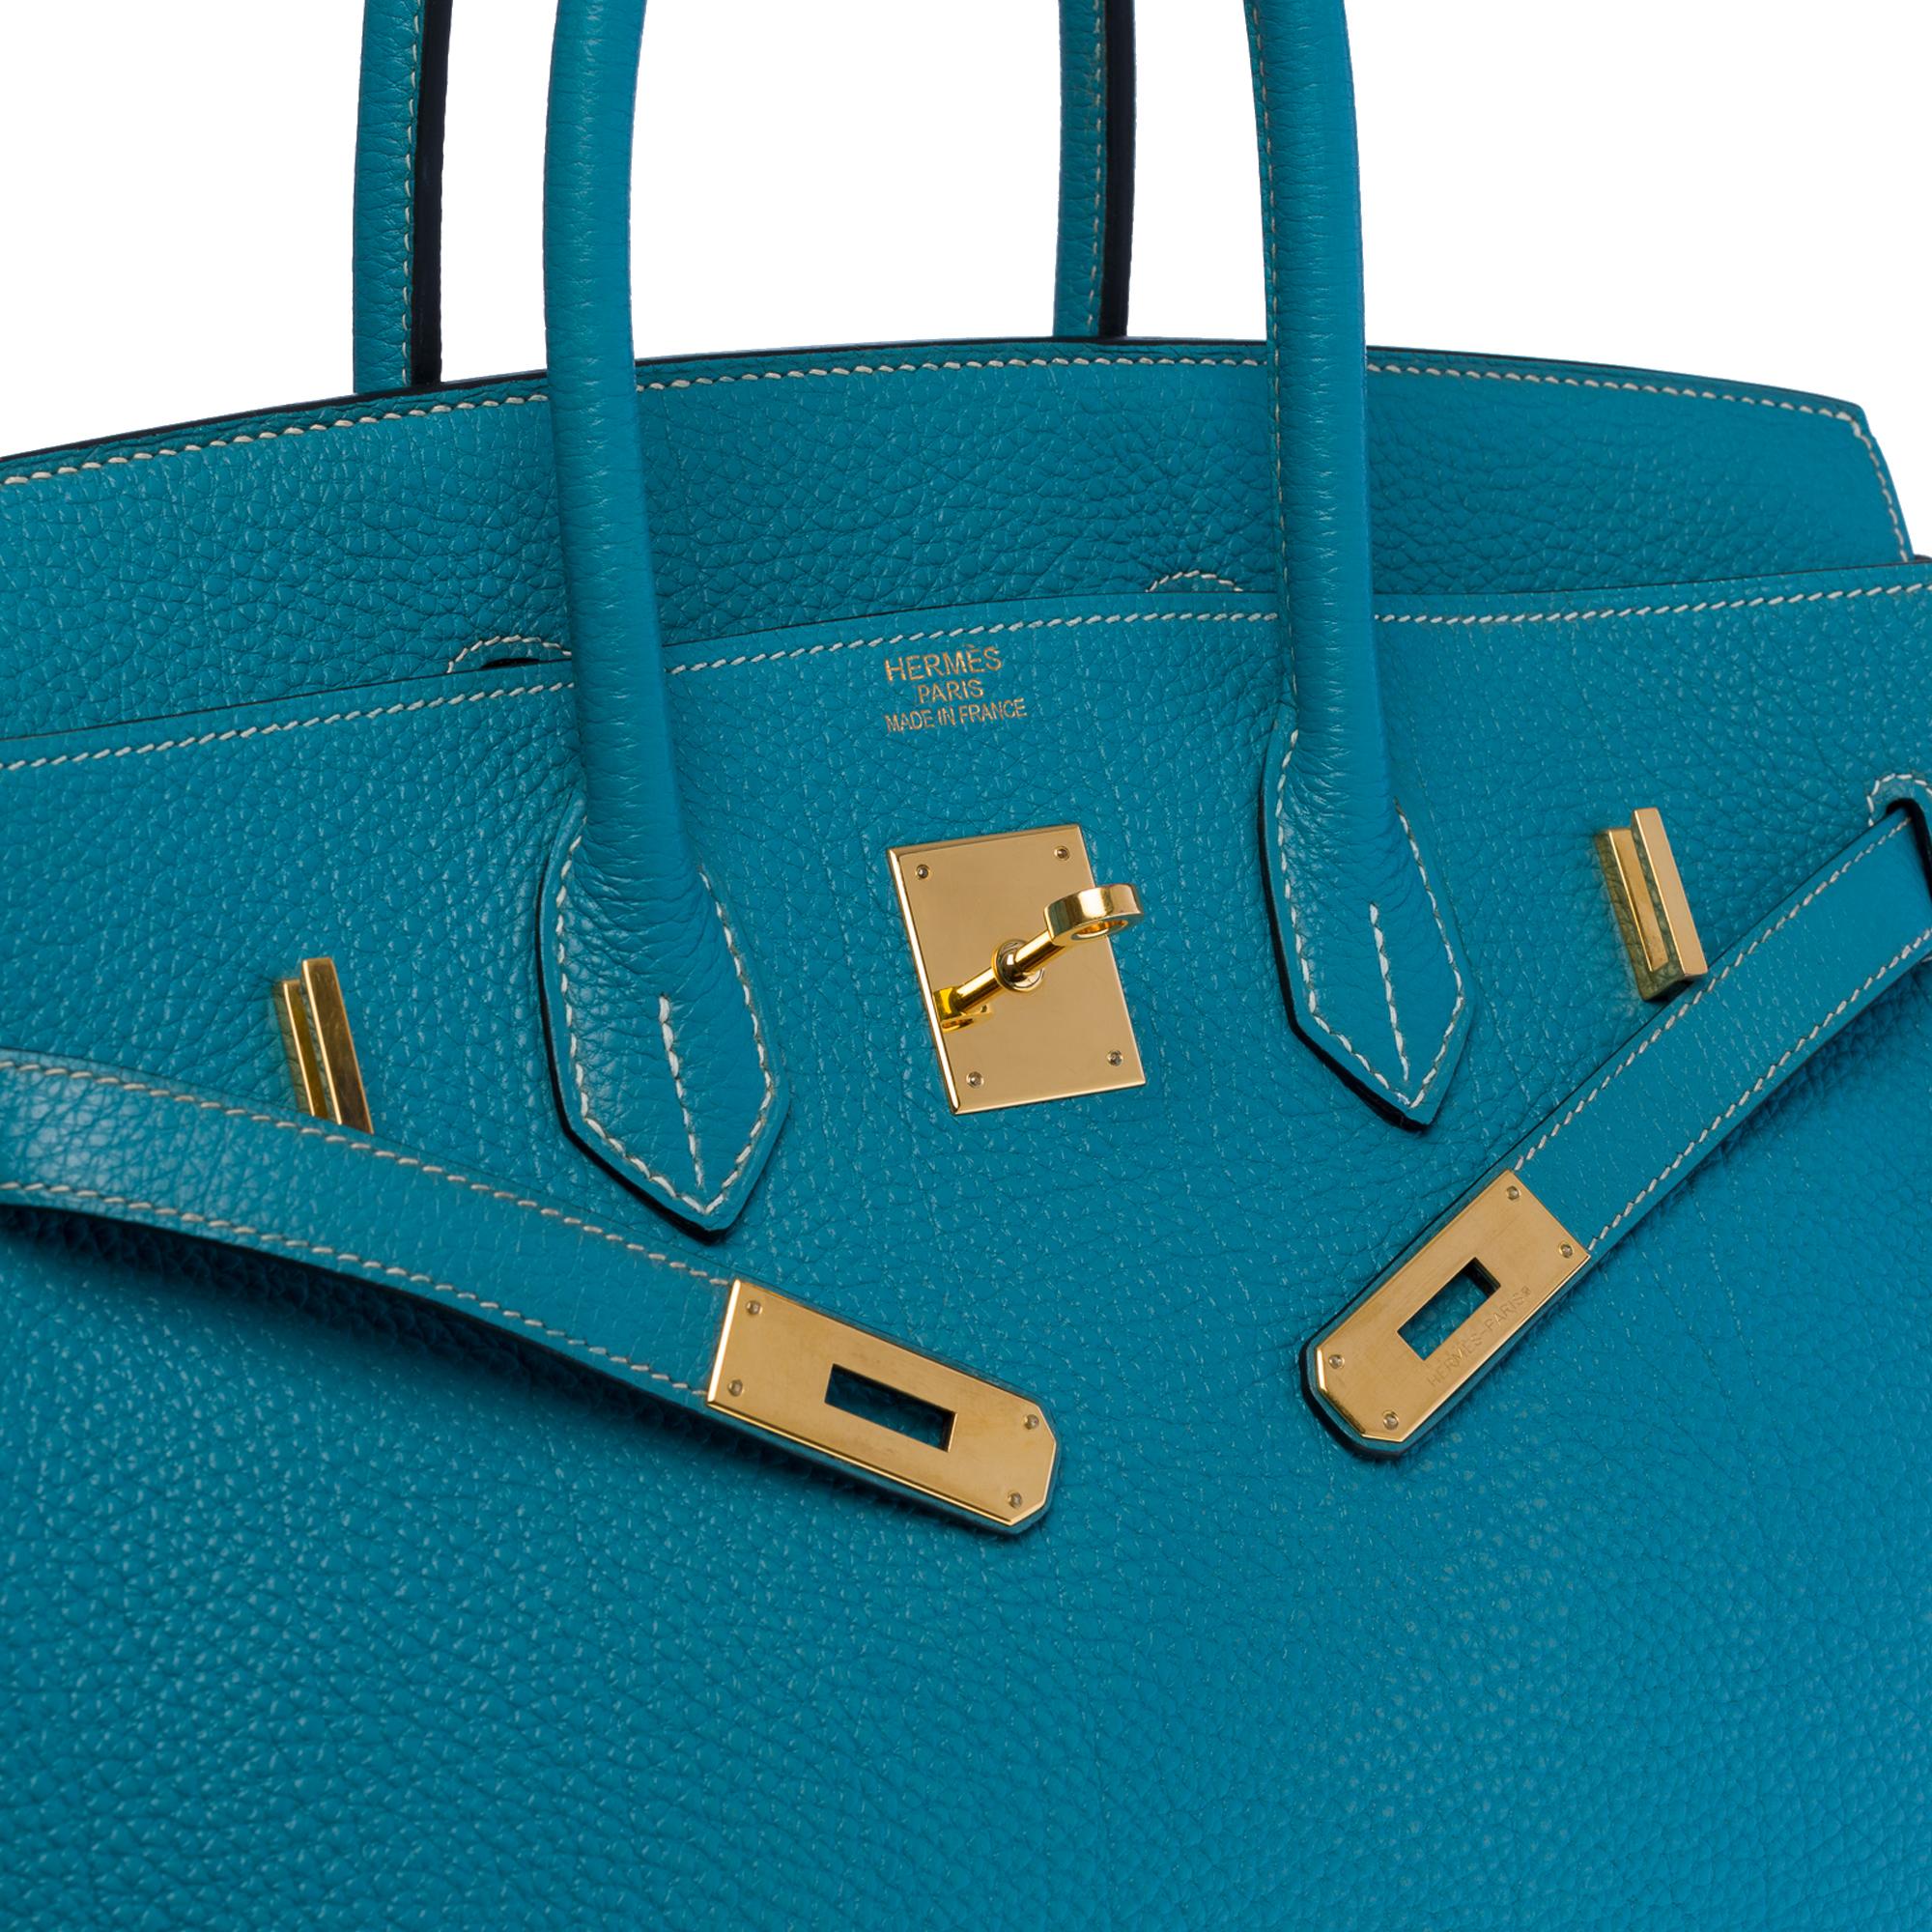 Women's or Men's Magnificent Hermès Birkin 35 handbag in Bleu Saint-Cyr Togo leather, GHW